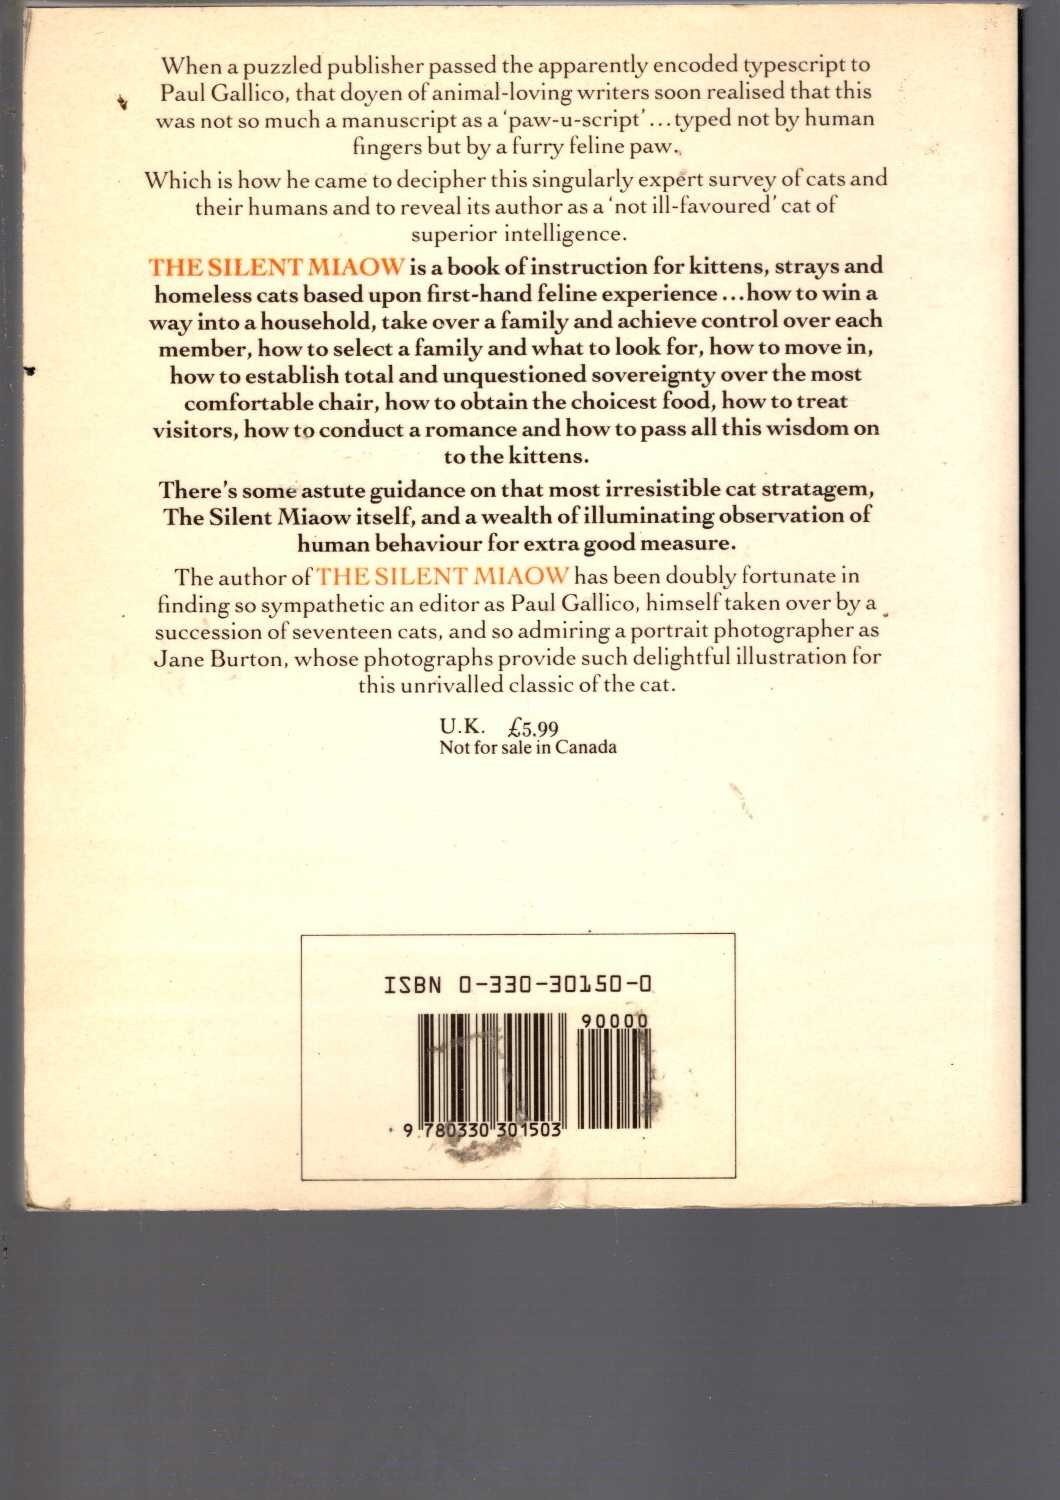 Terry Pratchett  CARPE JUGULUM magnified rear book cover image